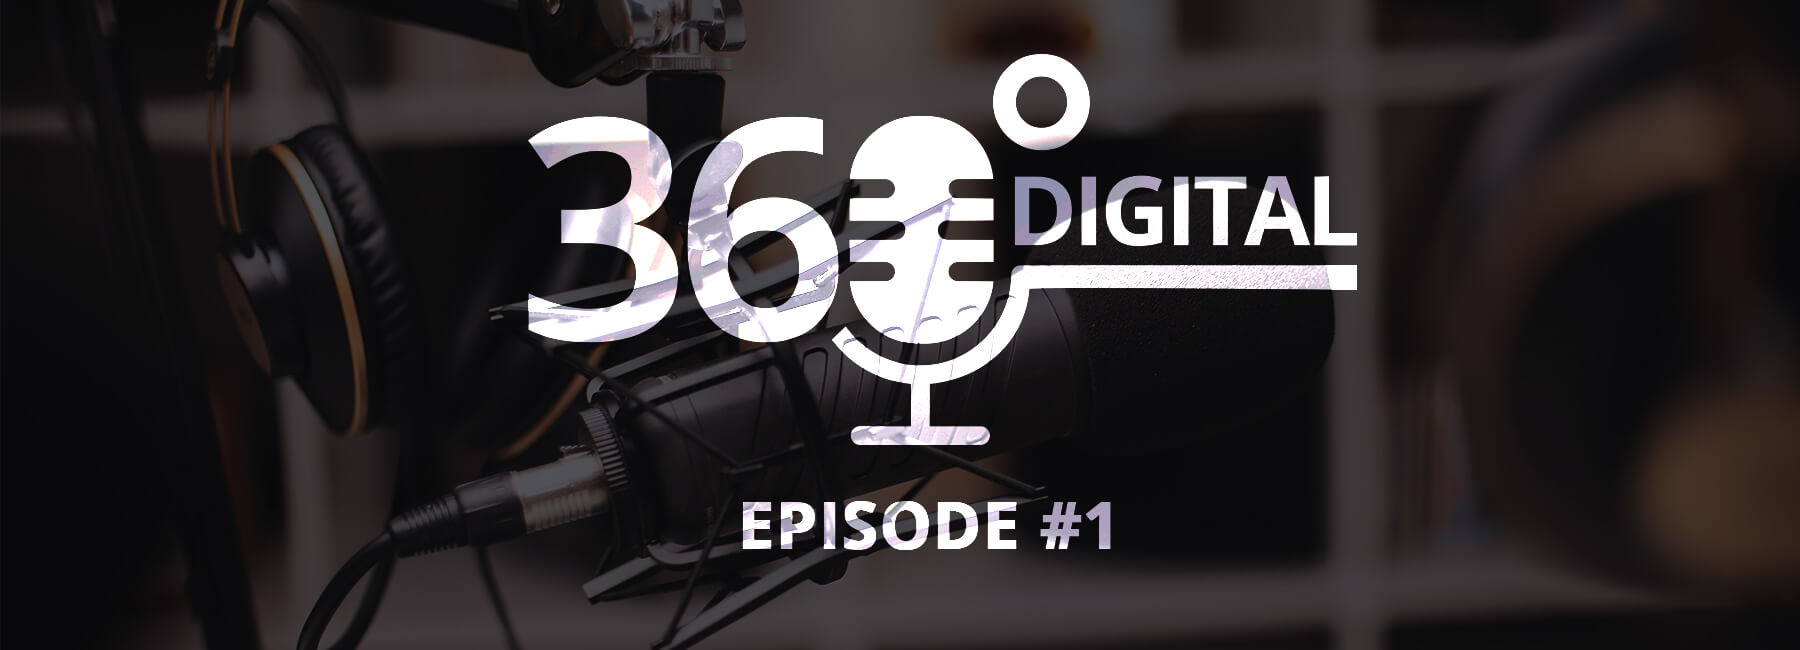 Mopinion startet brandneuen Podcast 360 Digital